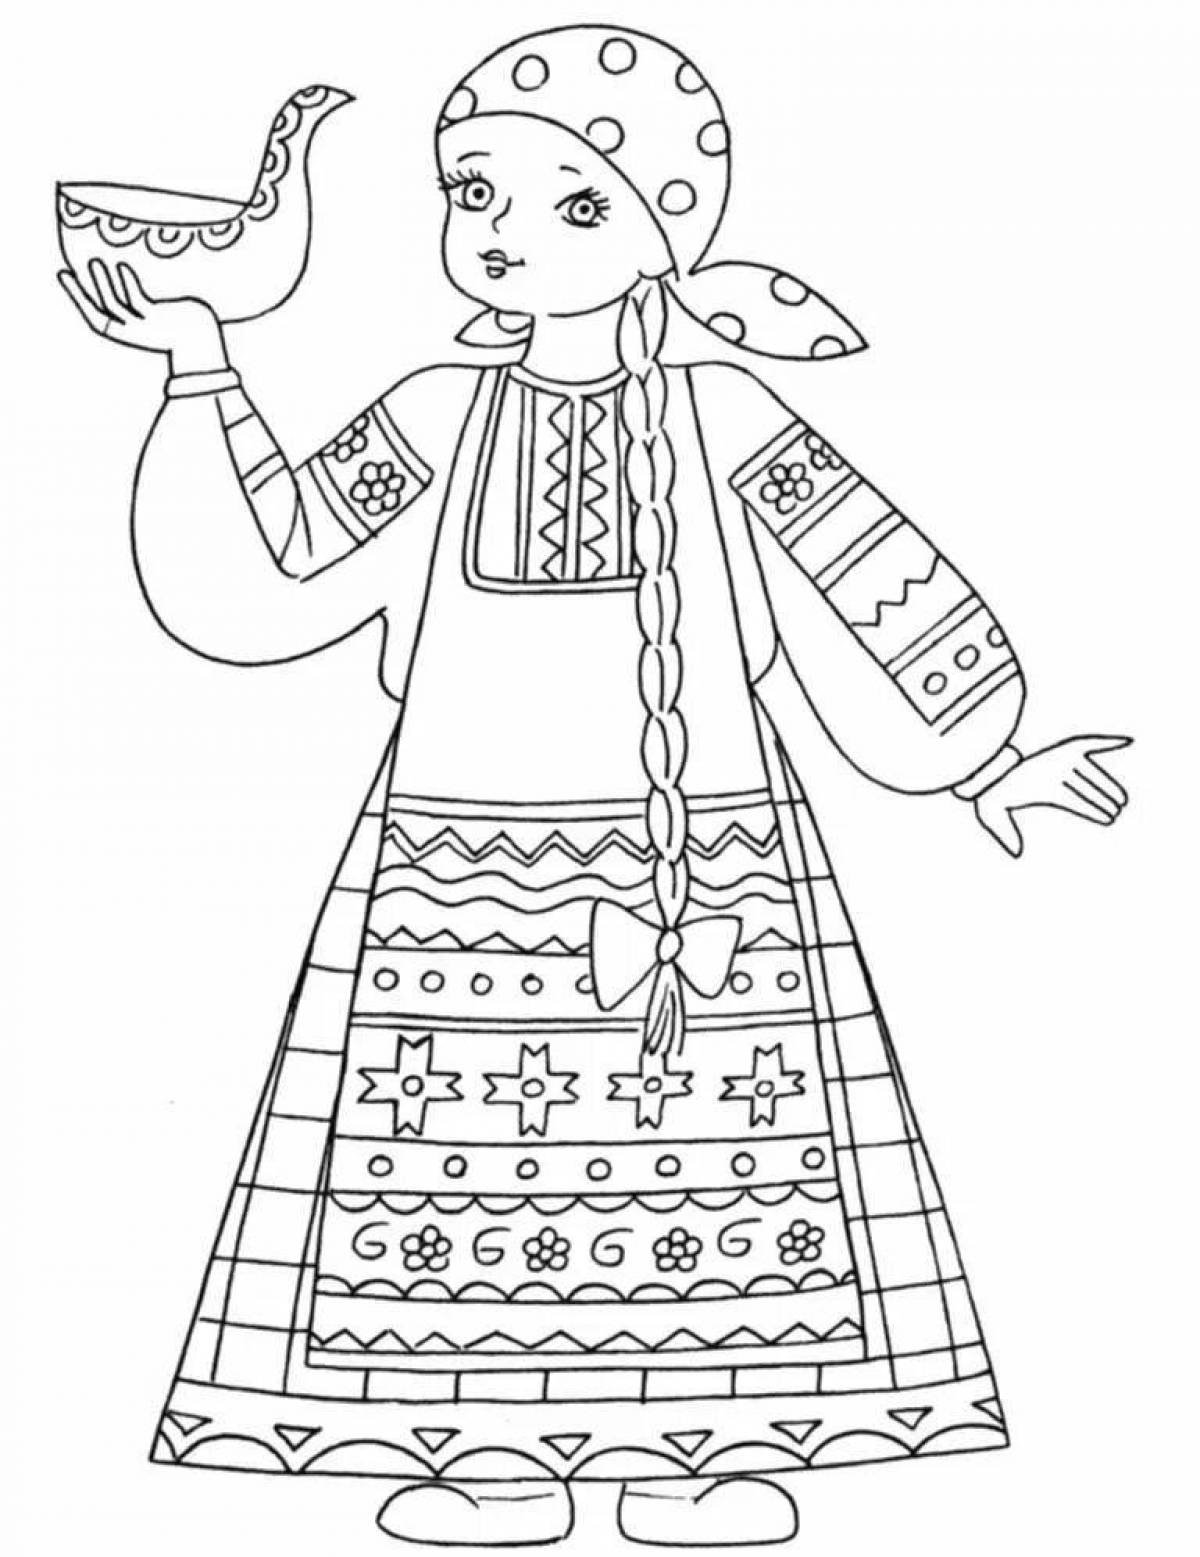 Majestic Russian women's folk costume